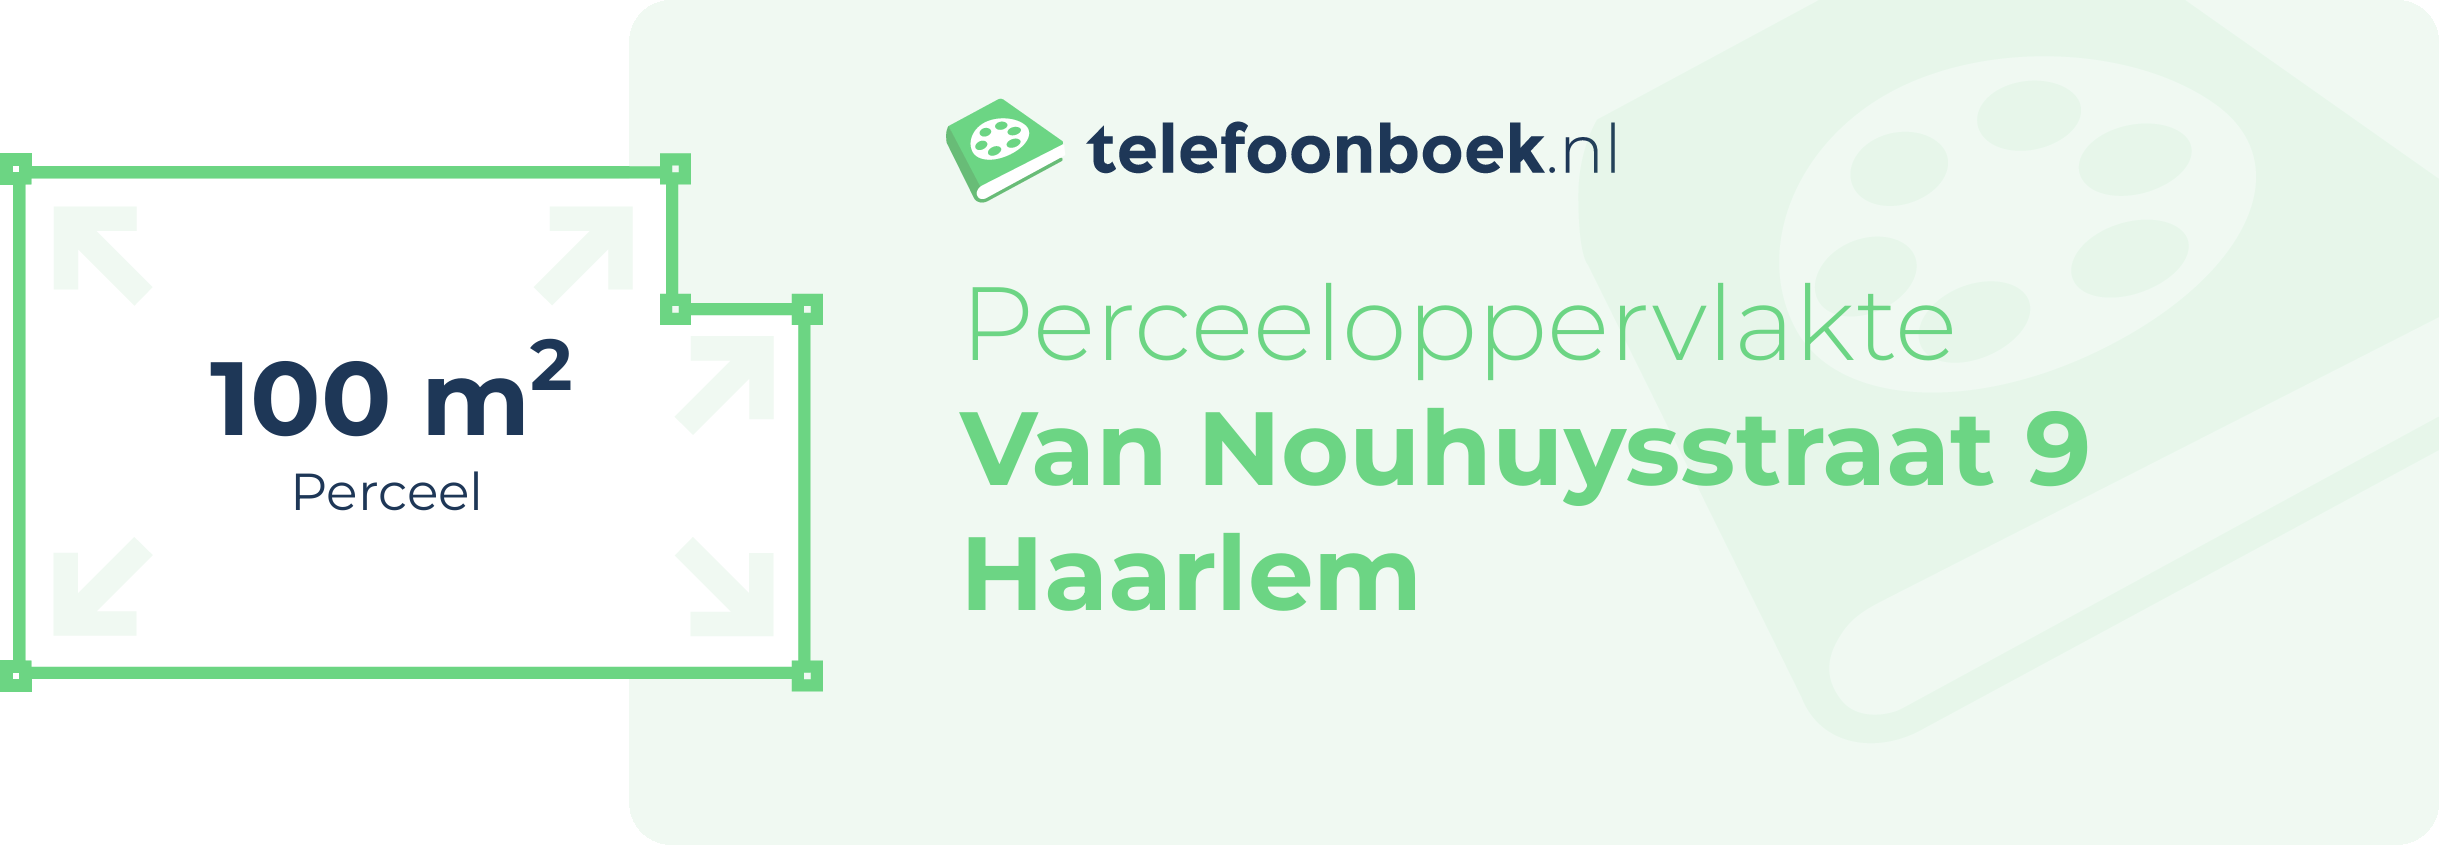 Perceeloppervlakte Van Nouhuysstraat 9 Haarlem